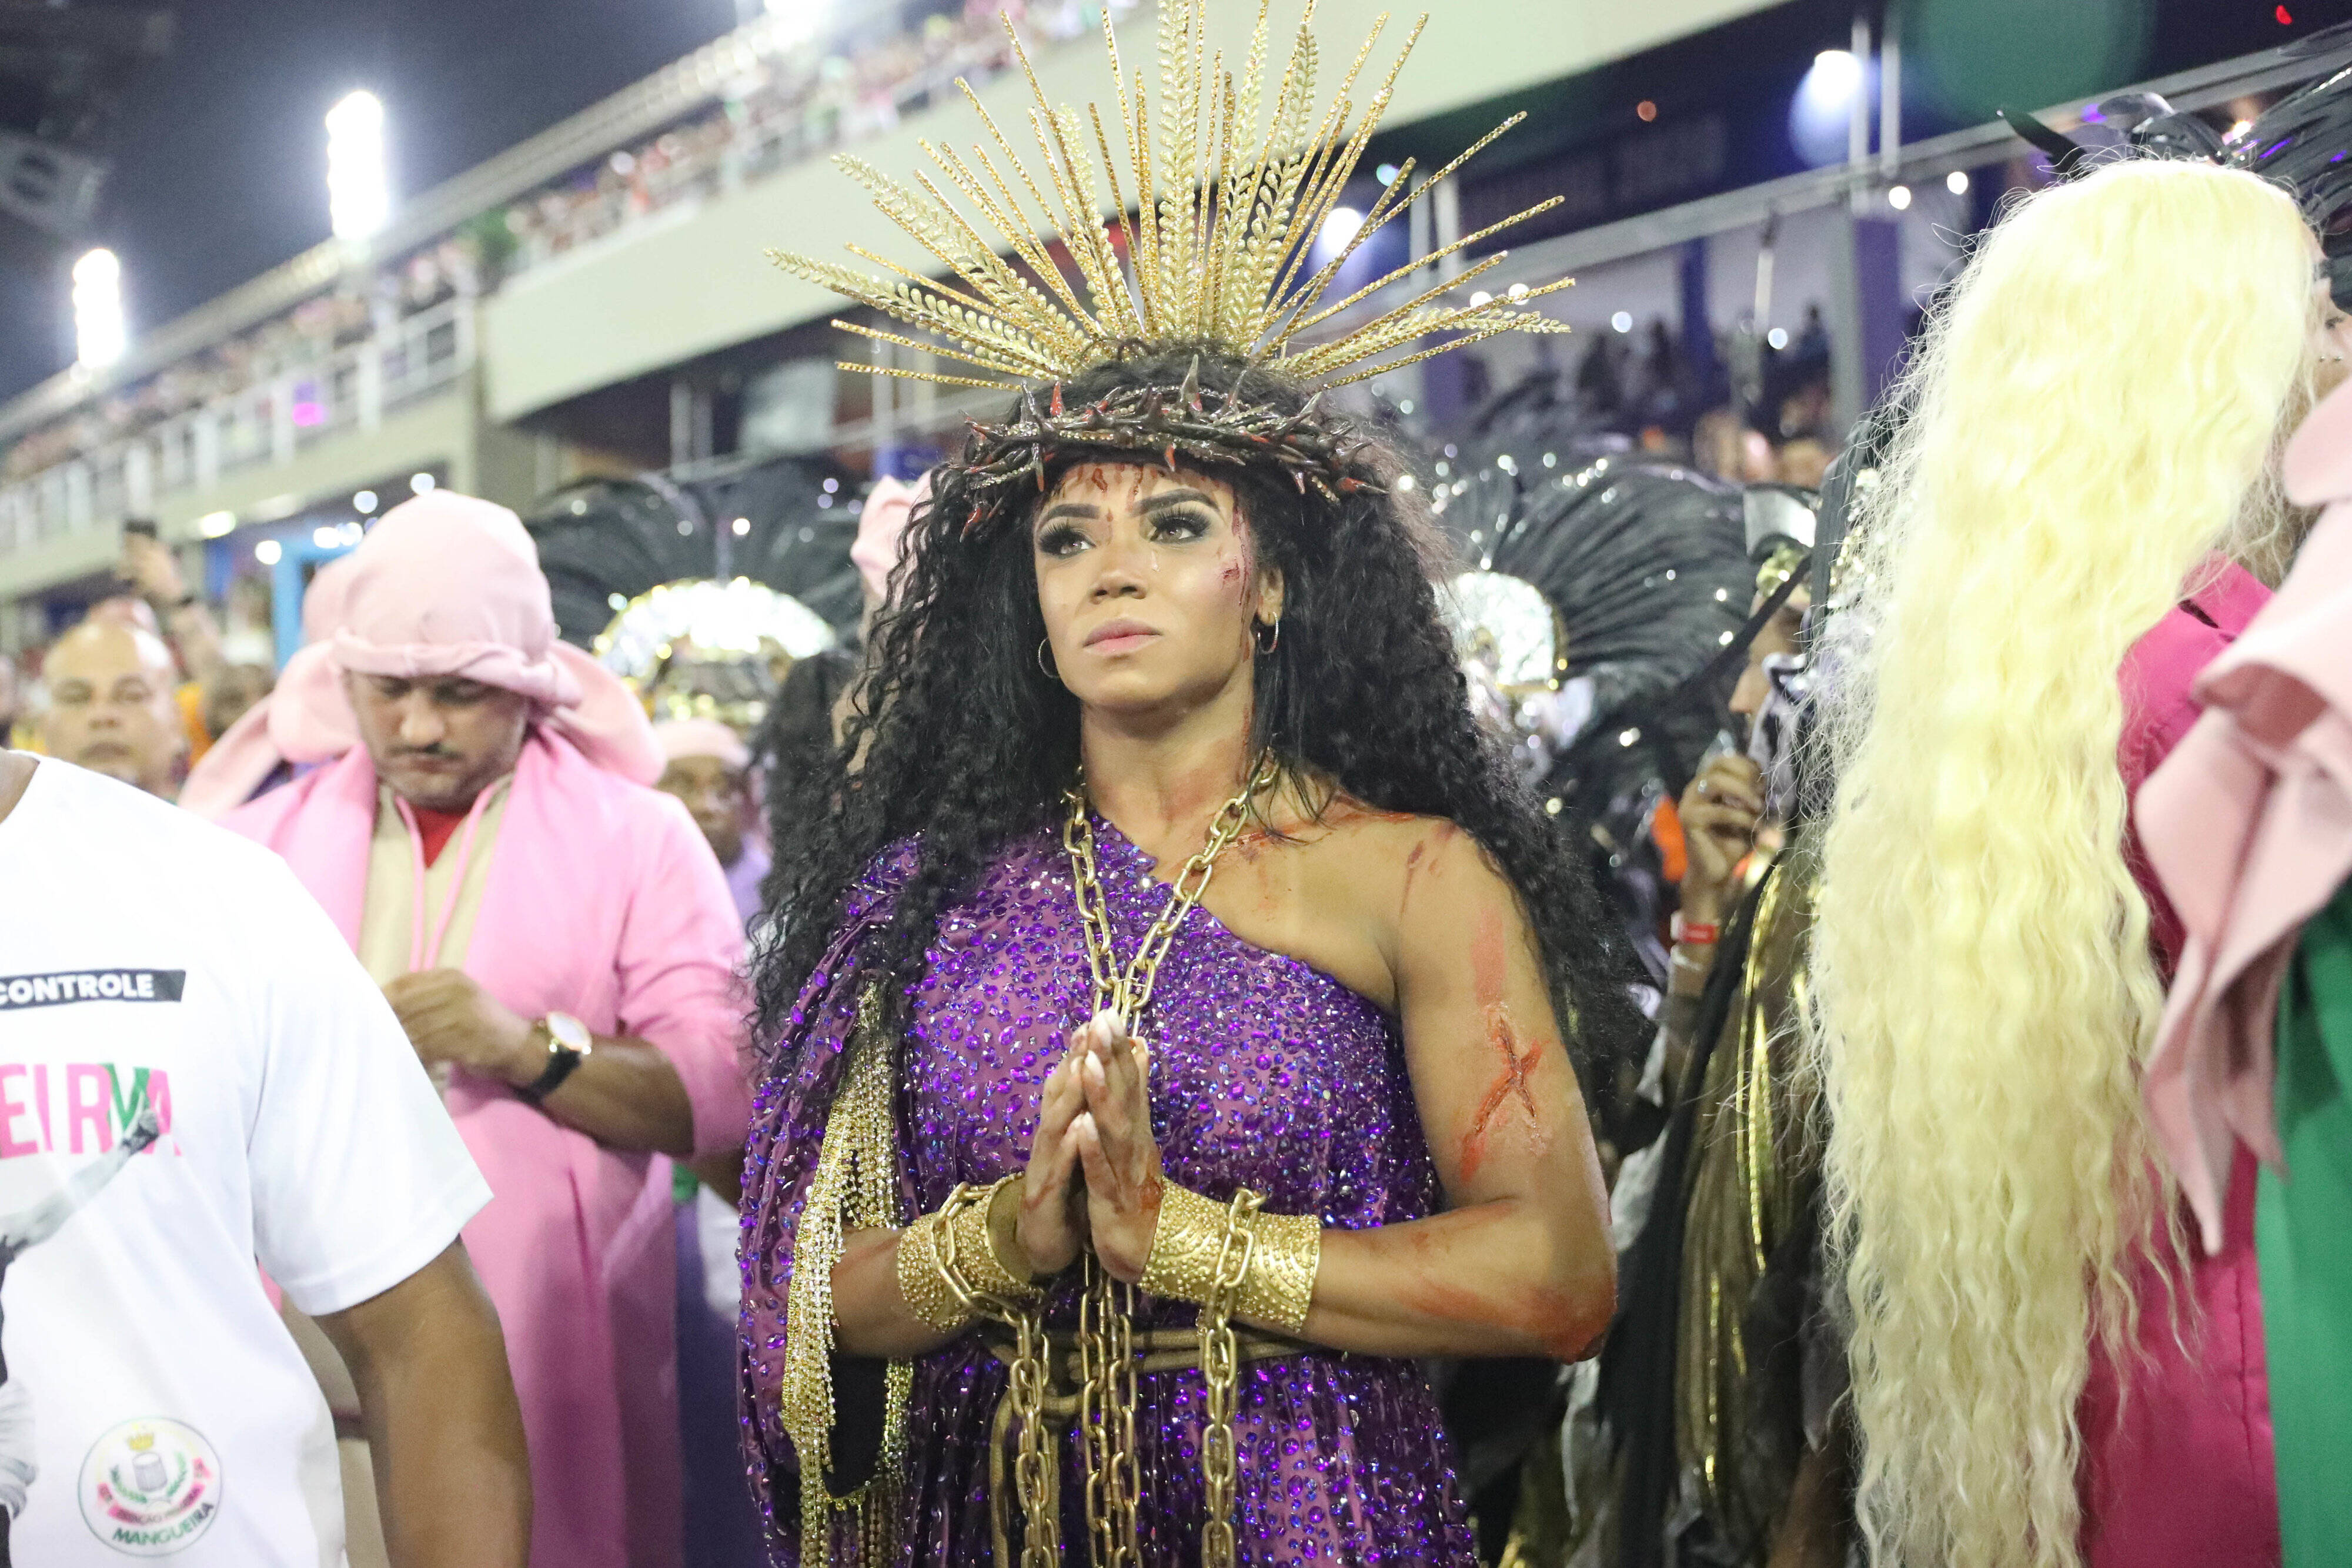 Rainhas de bateria agitam primeira noite de desfiles no Rio. Foto: Agência O Globo